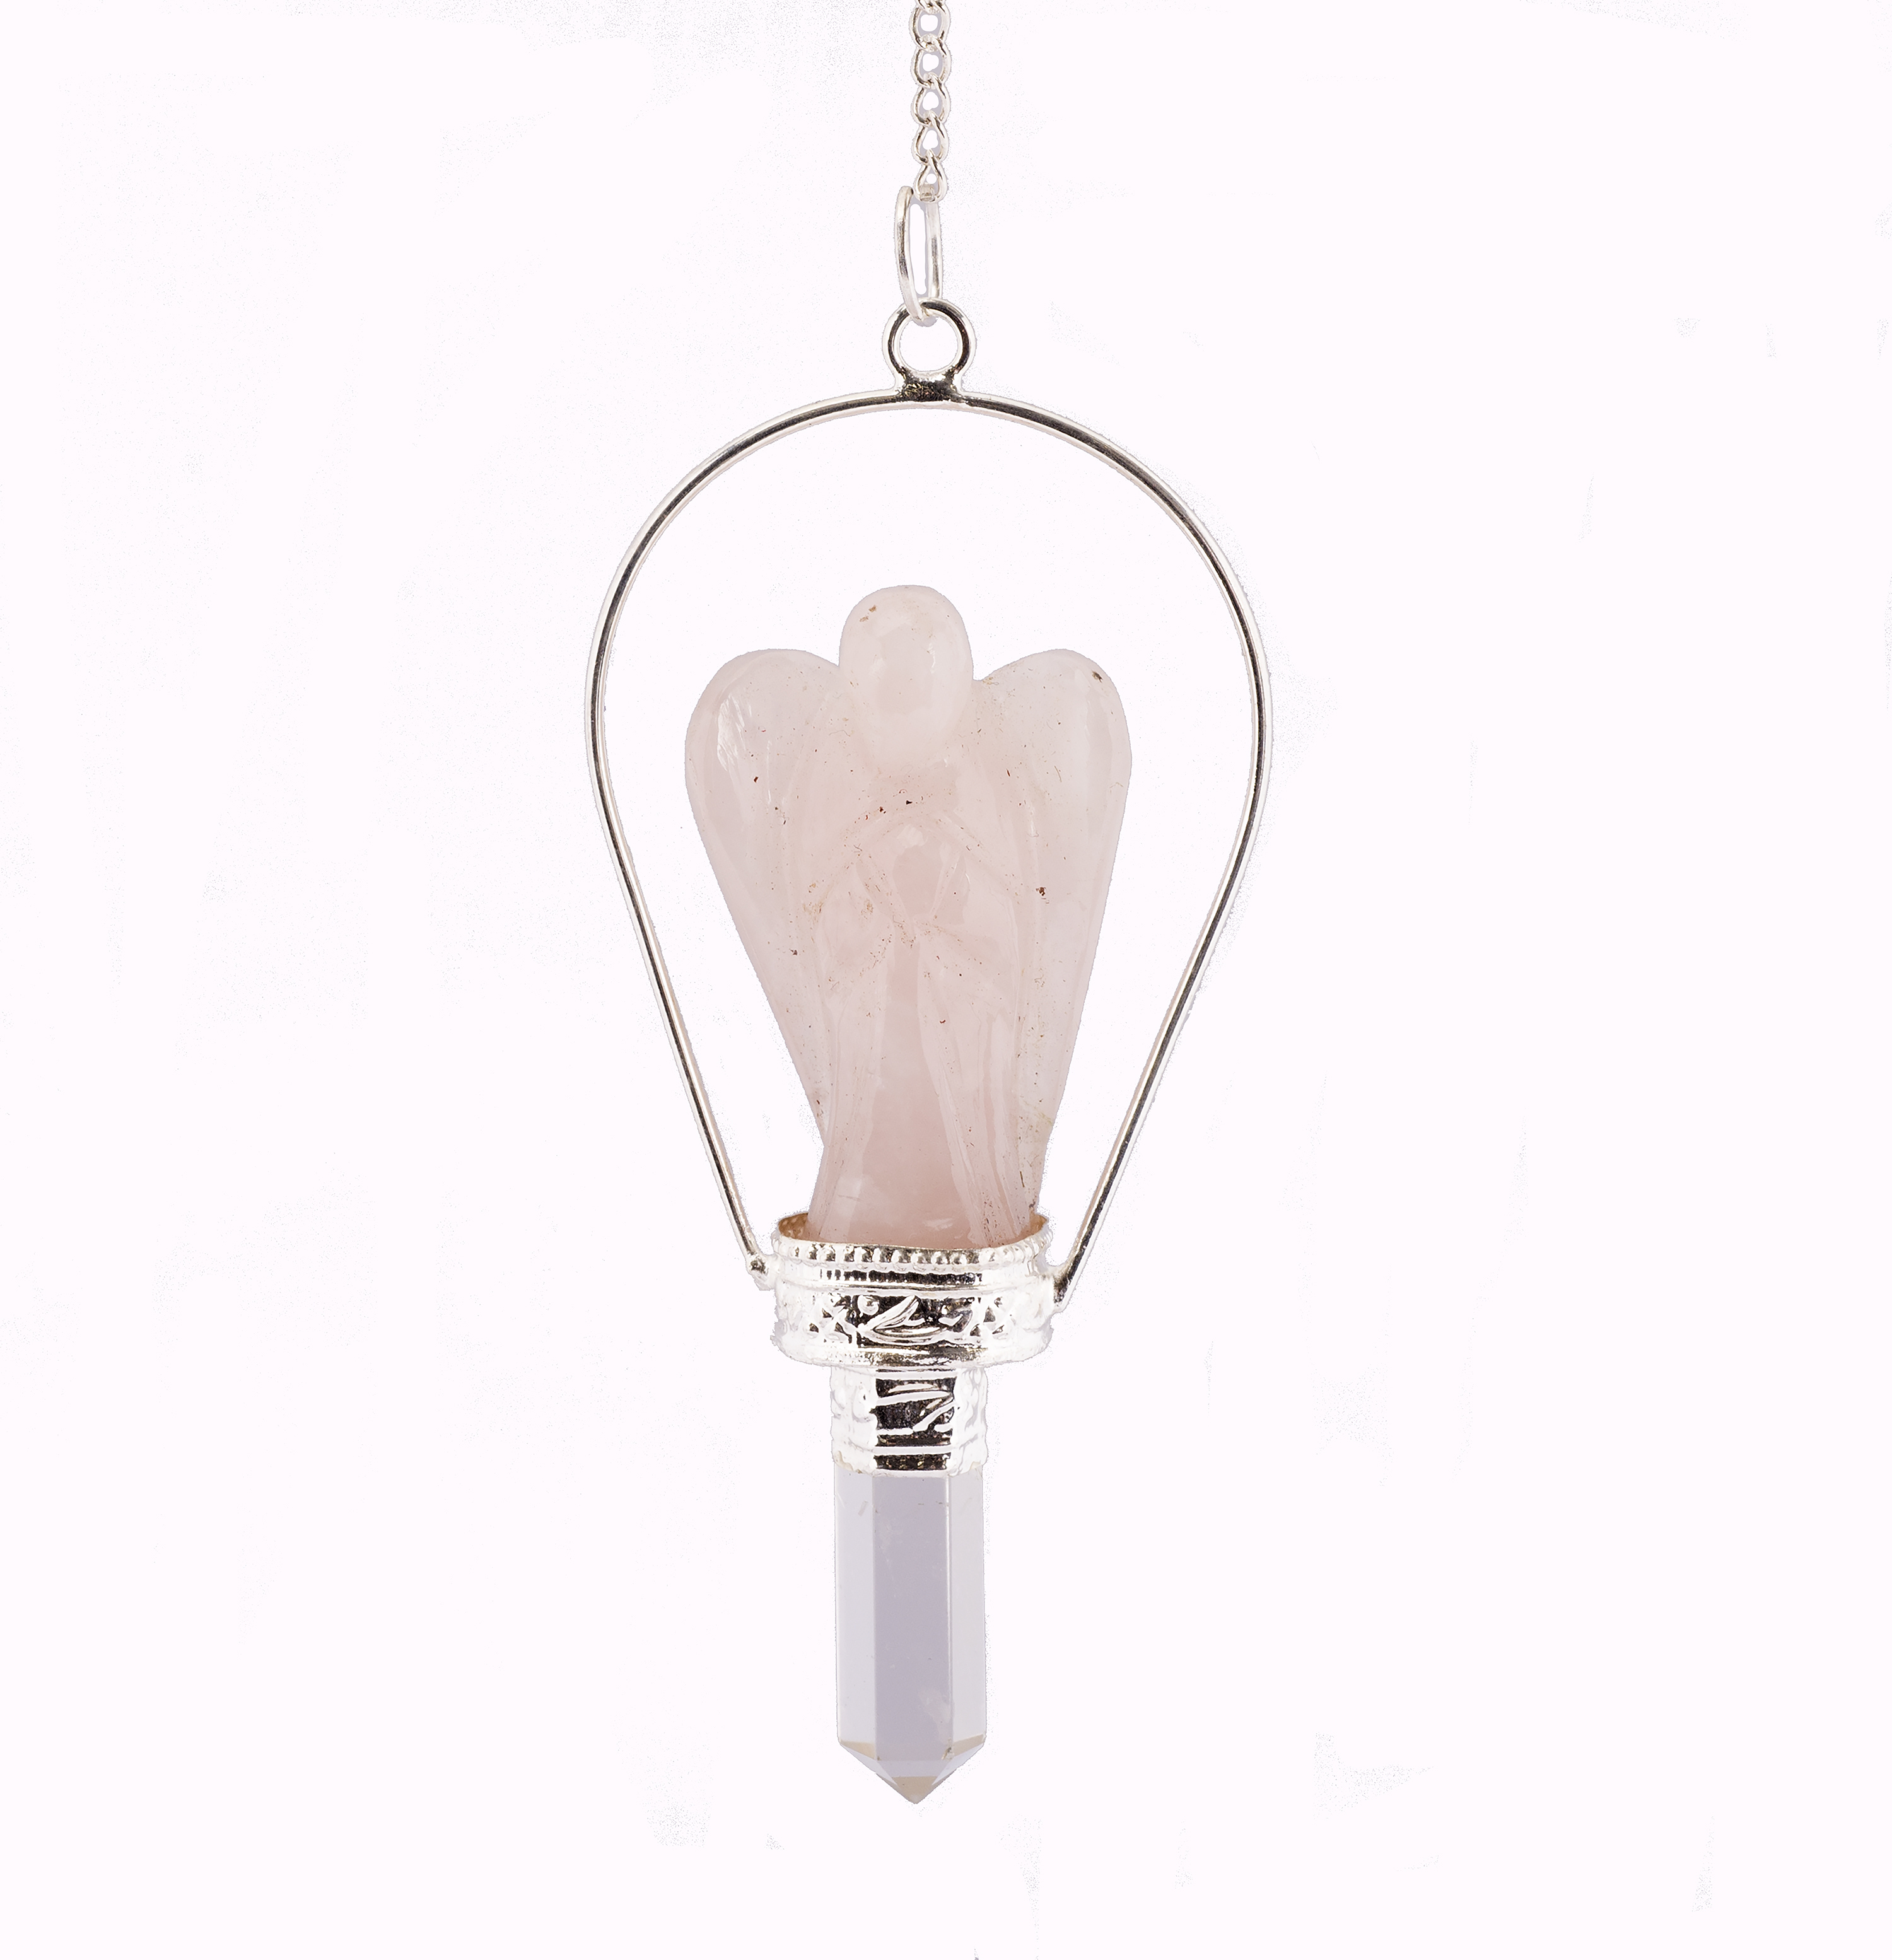 xl rose quartz pendulum